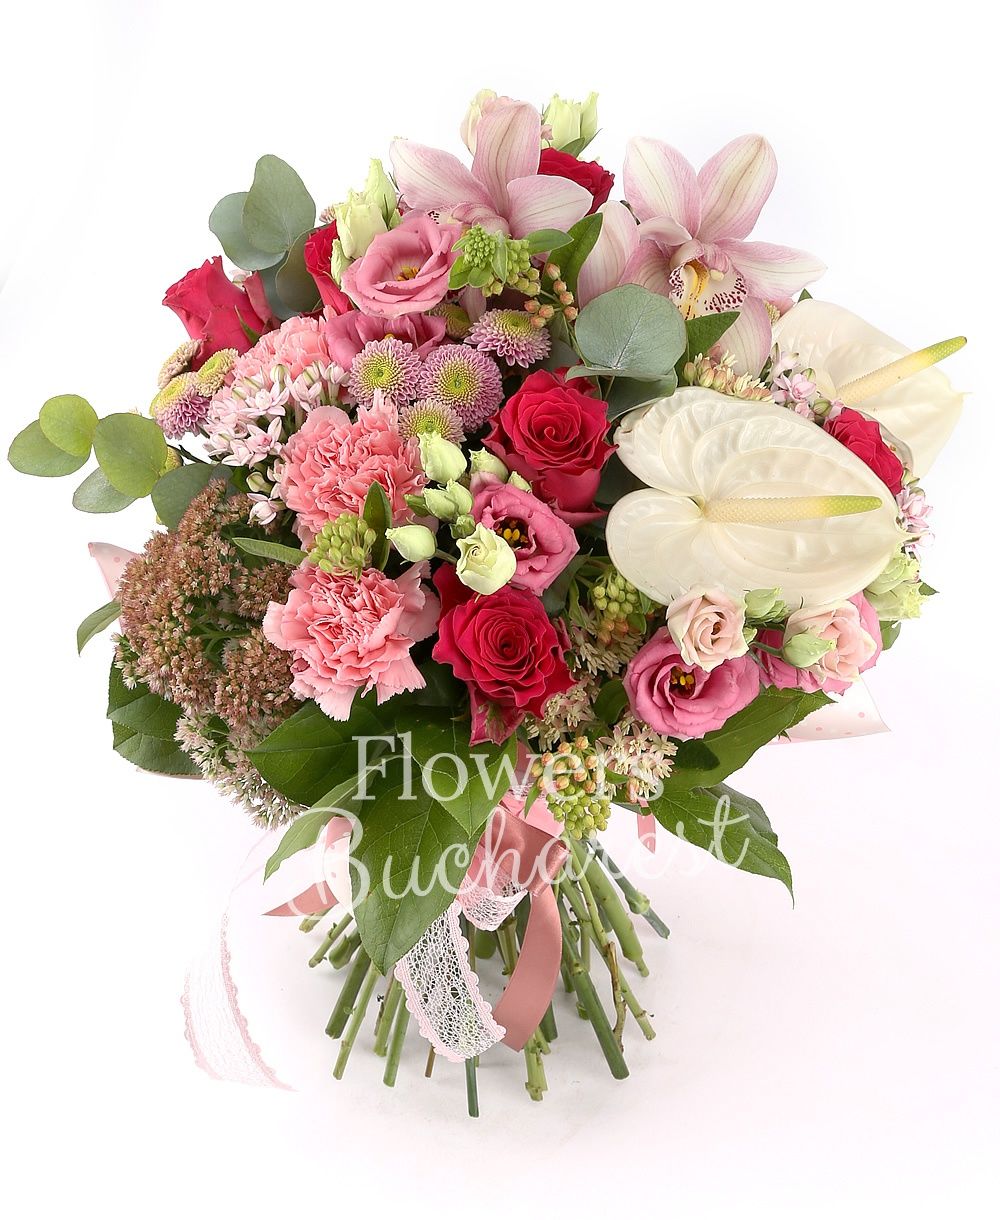 7 red roses, 5 pink bouvardia, 5 pink carnations, 5 pink santini, 2 white anthurium, pink cymbidium, greenery